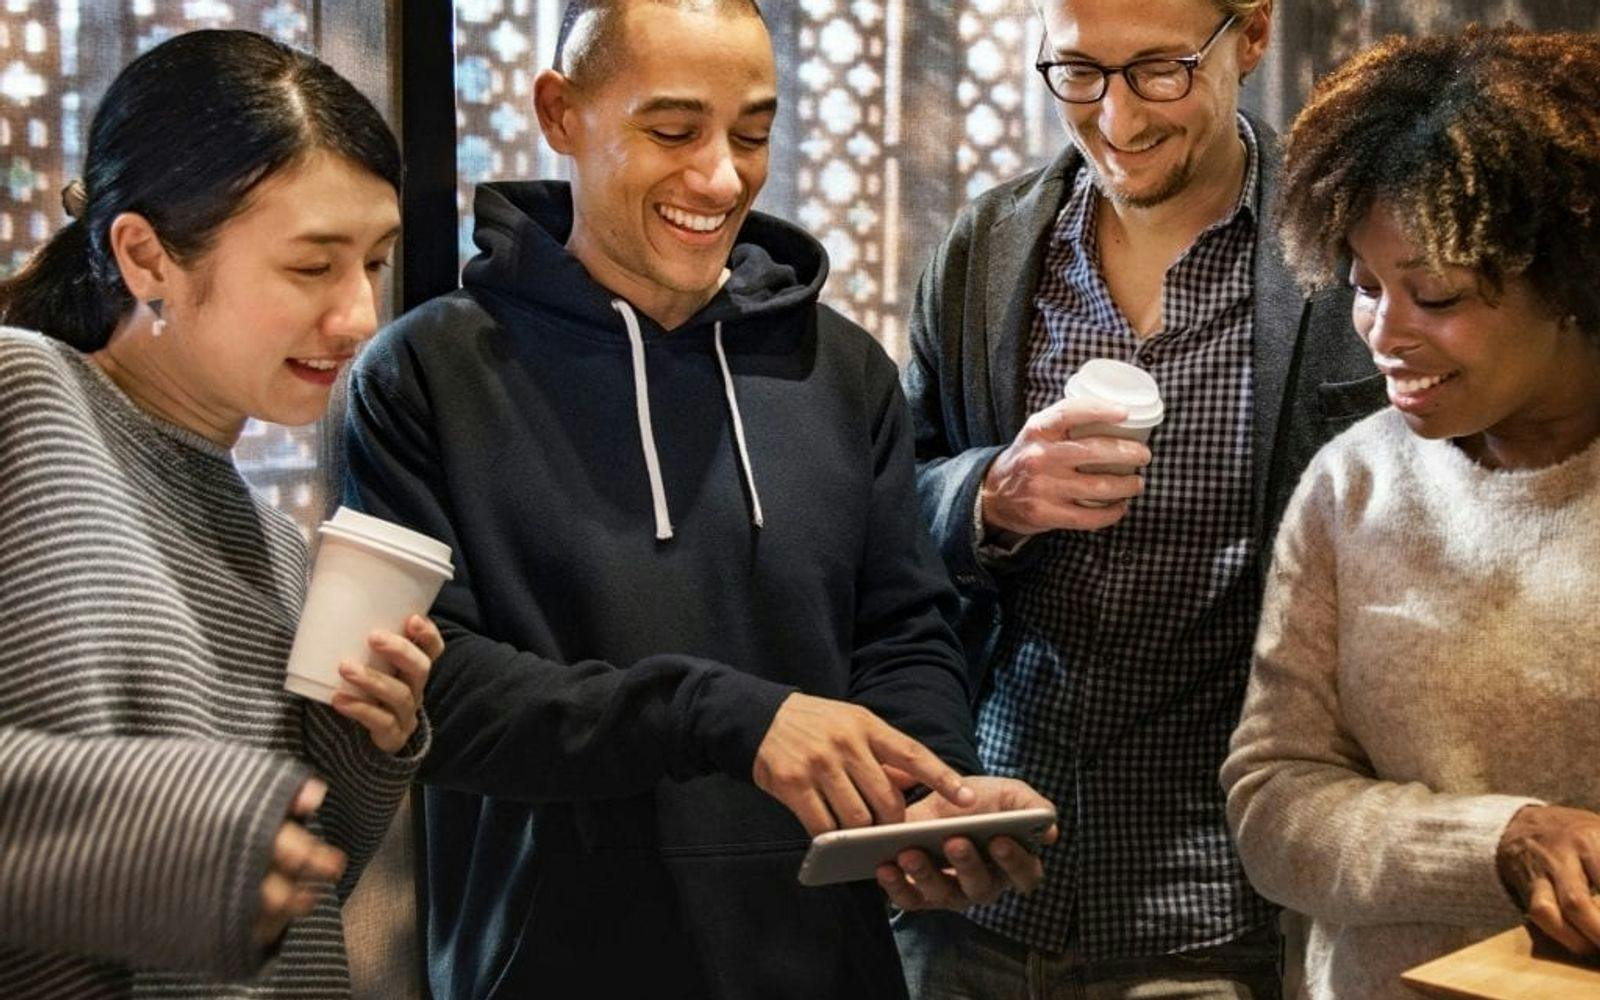 Gruppe smilende mennesker som ser på en smarttelefon